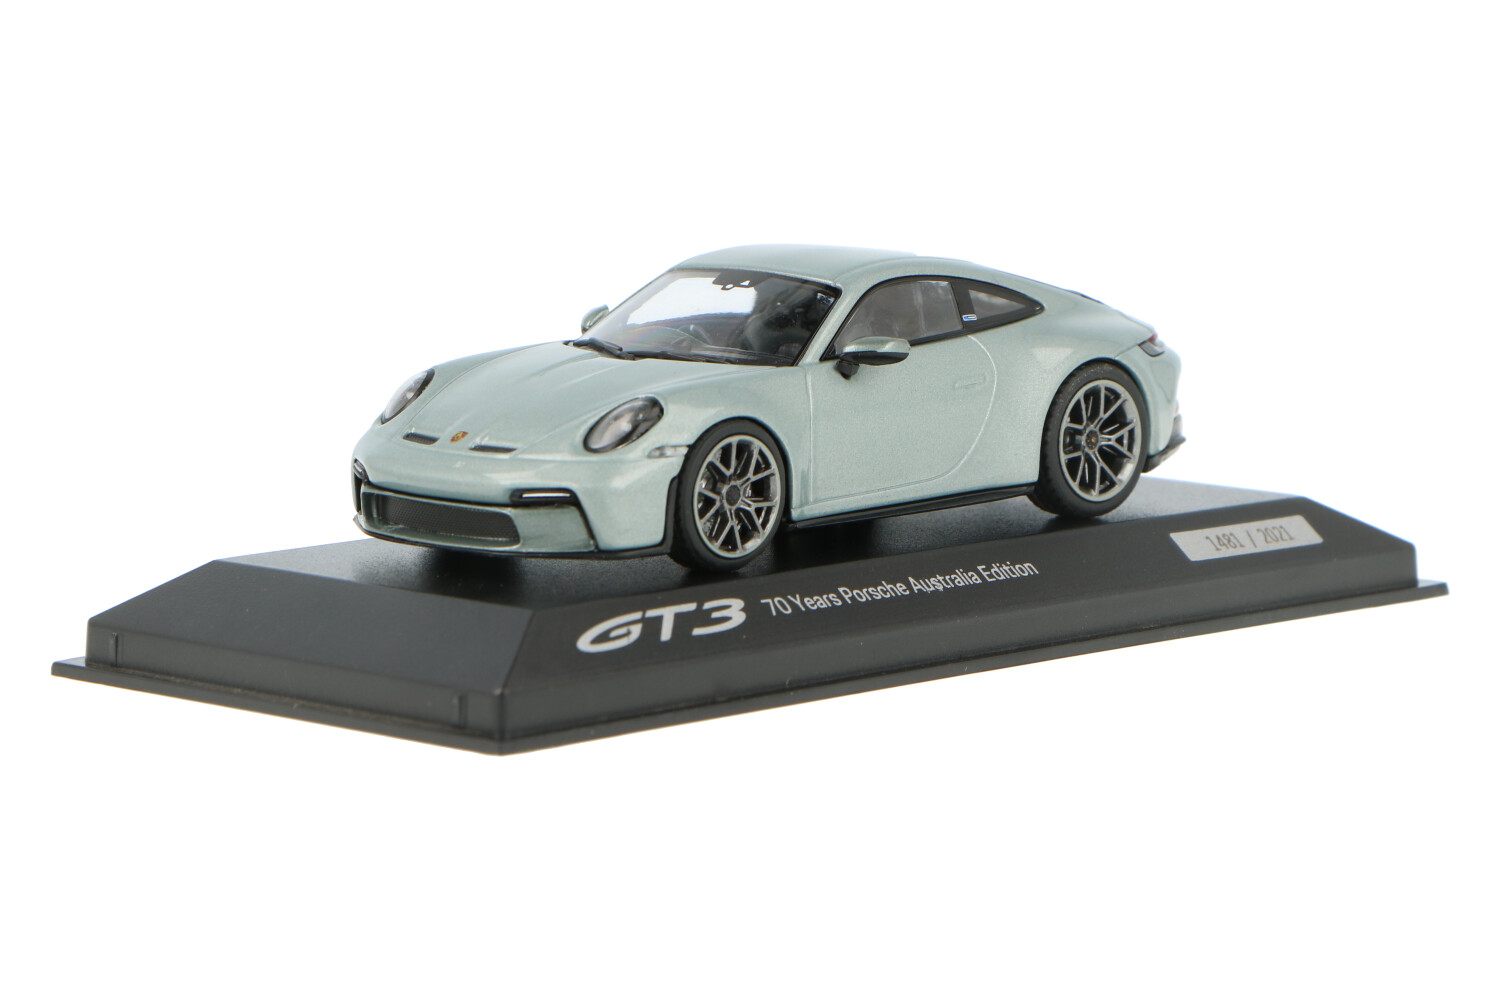 Porsche-911-GT3-Touring-Package-WAP0201640N001_1315WAP0201640N001Porsche-911-GT3-Touring-Package-WAP0201640N001_Houseofmodelcars_.jpg